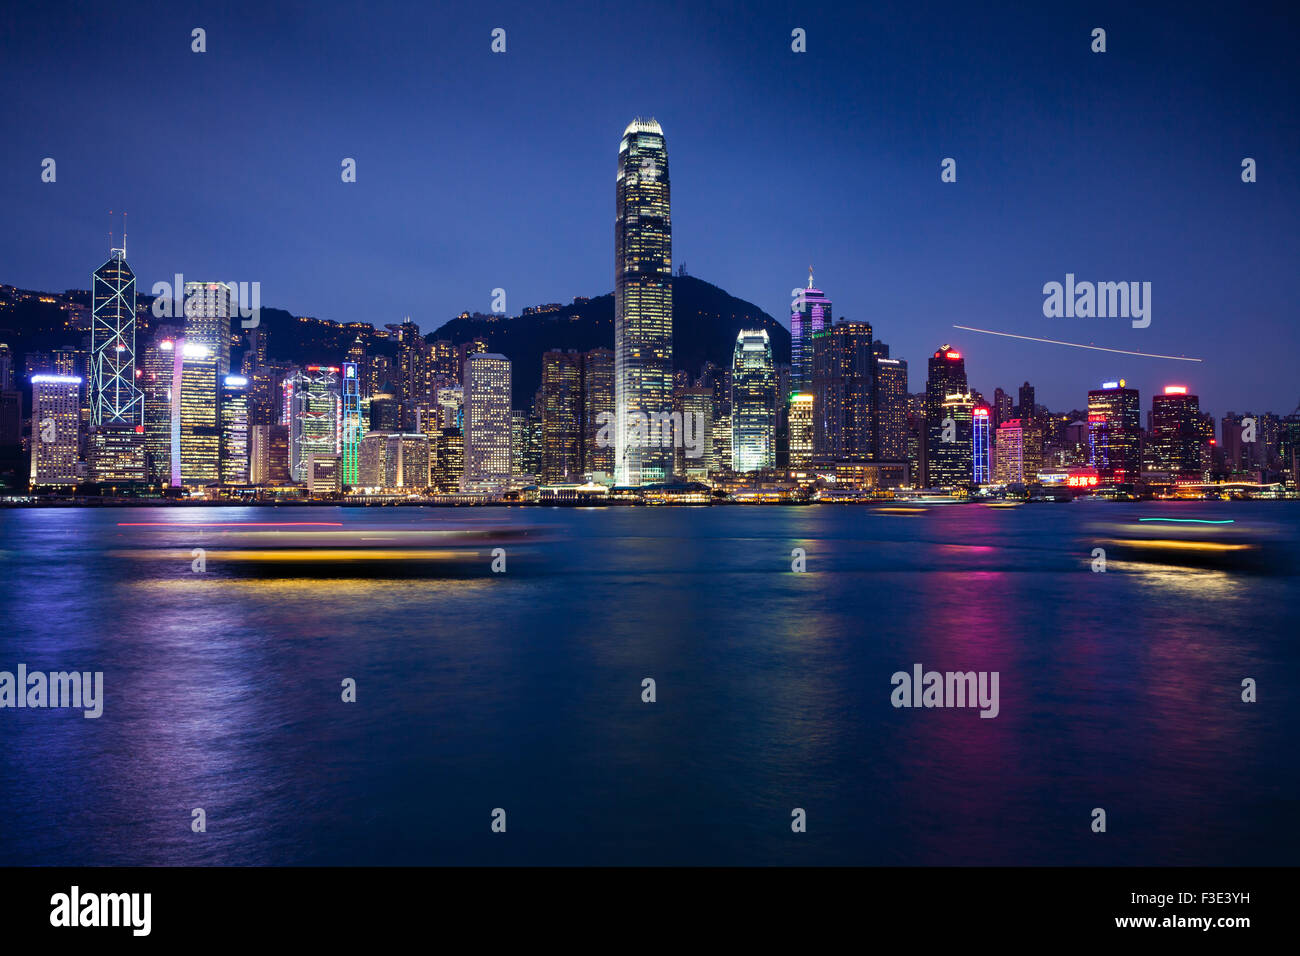 Hong Kong S.A.R., Hong Kong - 23 Février, 2014 : scène de nuit de l'île de Hong Kong, vue de la promenade de Tsim Sha Tsui, Kowloon Banque D'Images